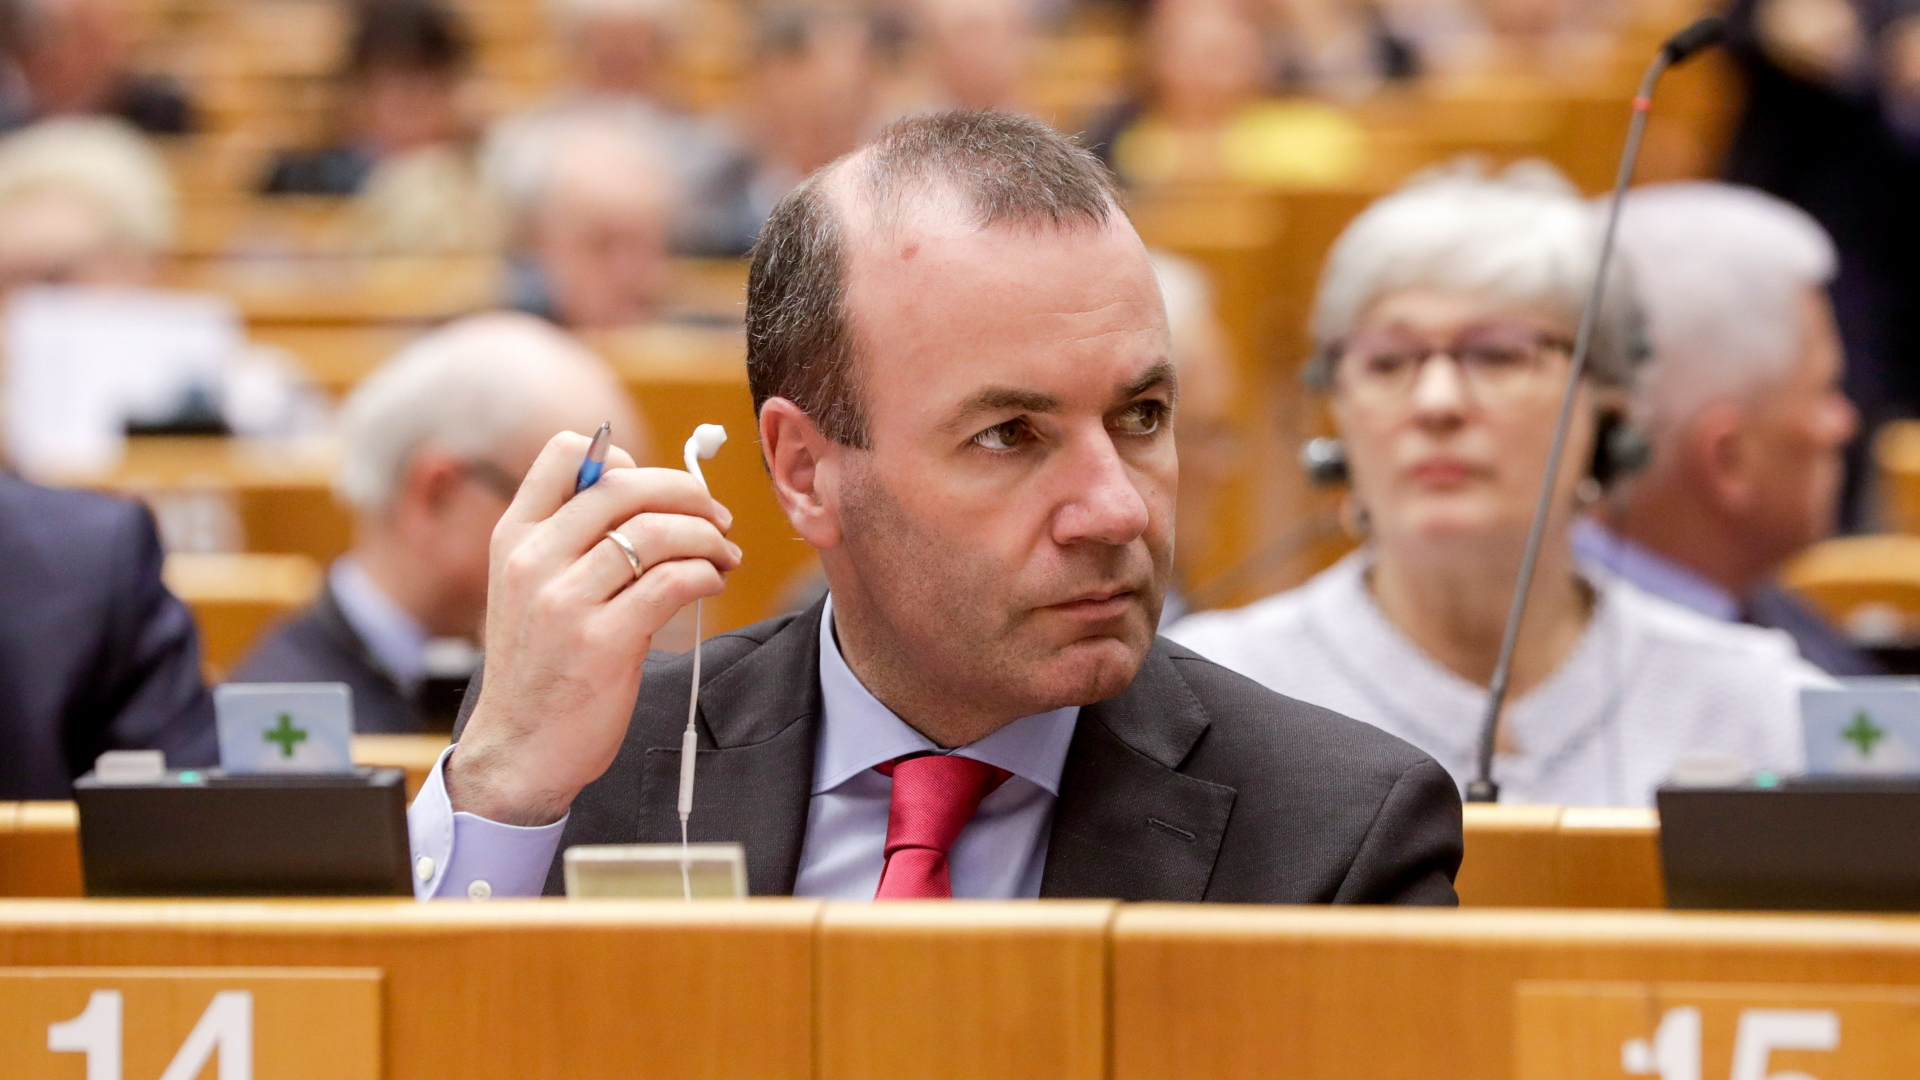 Der CSU-Europaabgeordnete Weber hält während einer Debatte einen Kopfhörer in der Hand